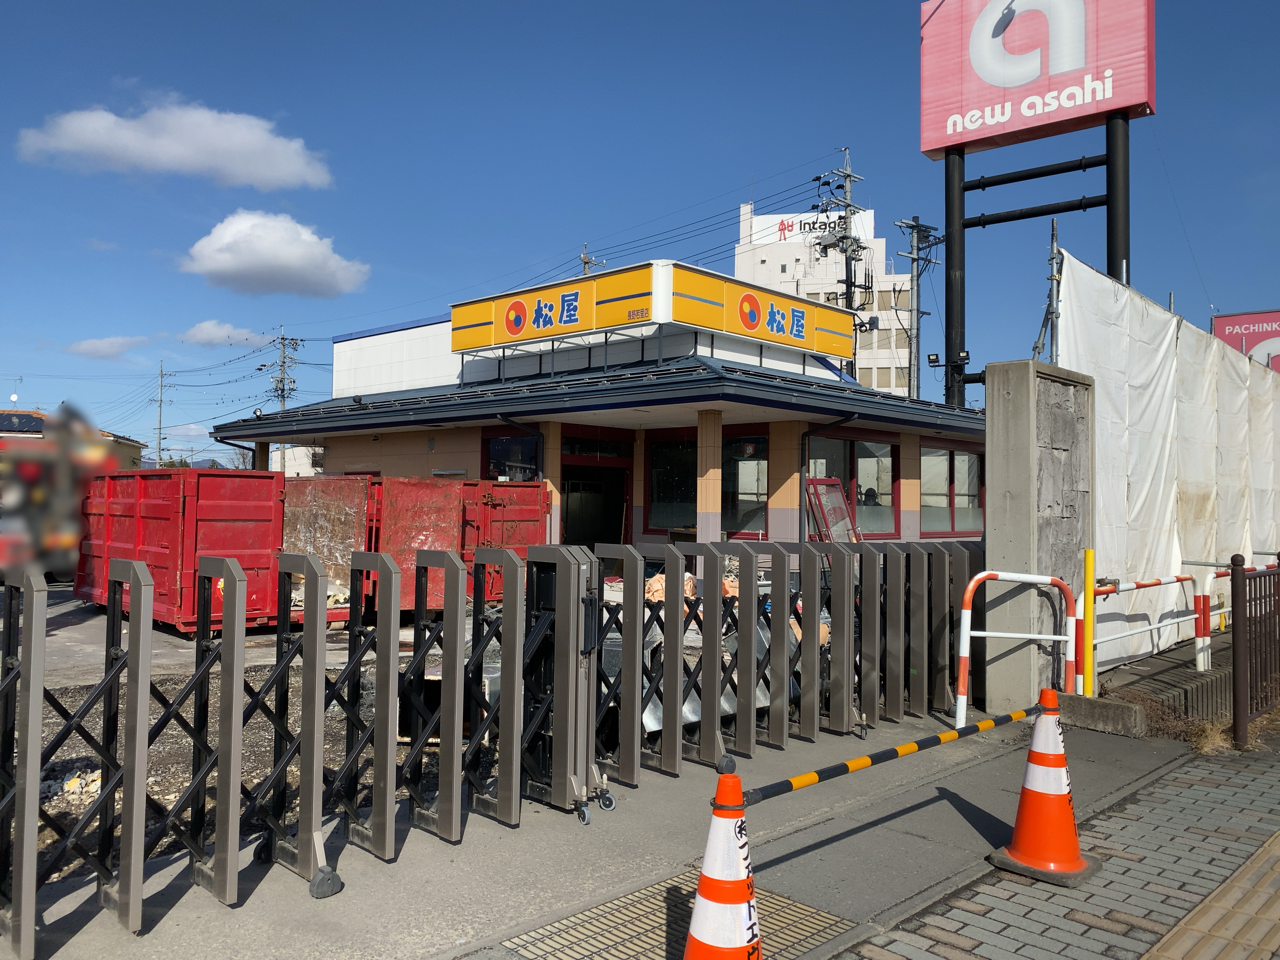 稲葉にあった牛丼チェーン 松屋 長野若里店 が閉店してる ながの通信 長野県長野市の地域情報サイト